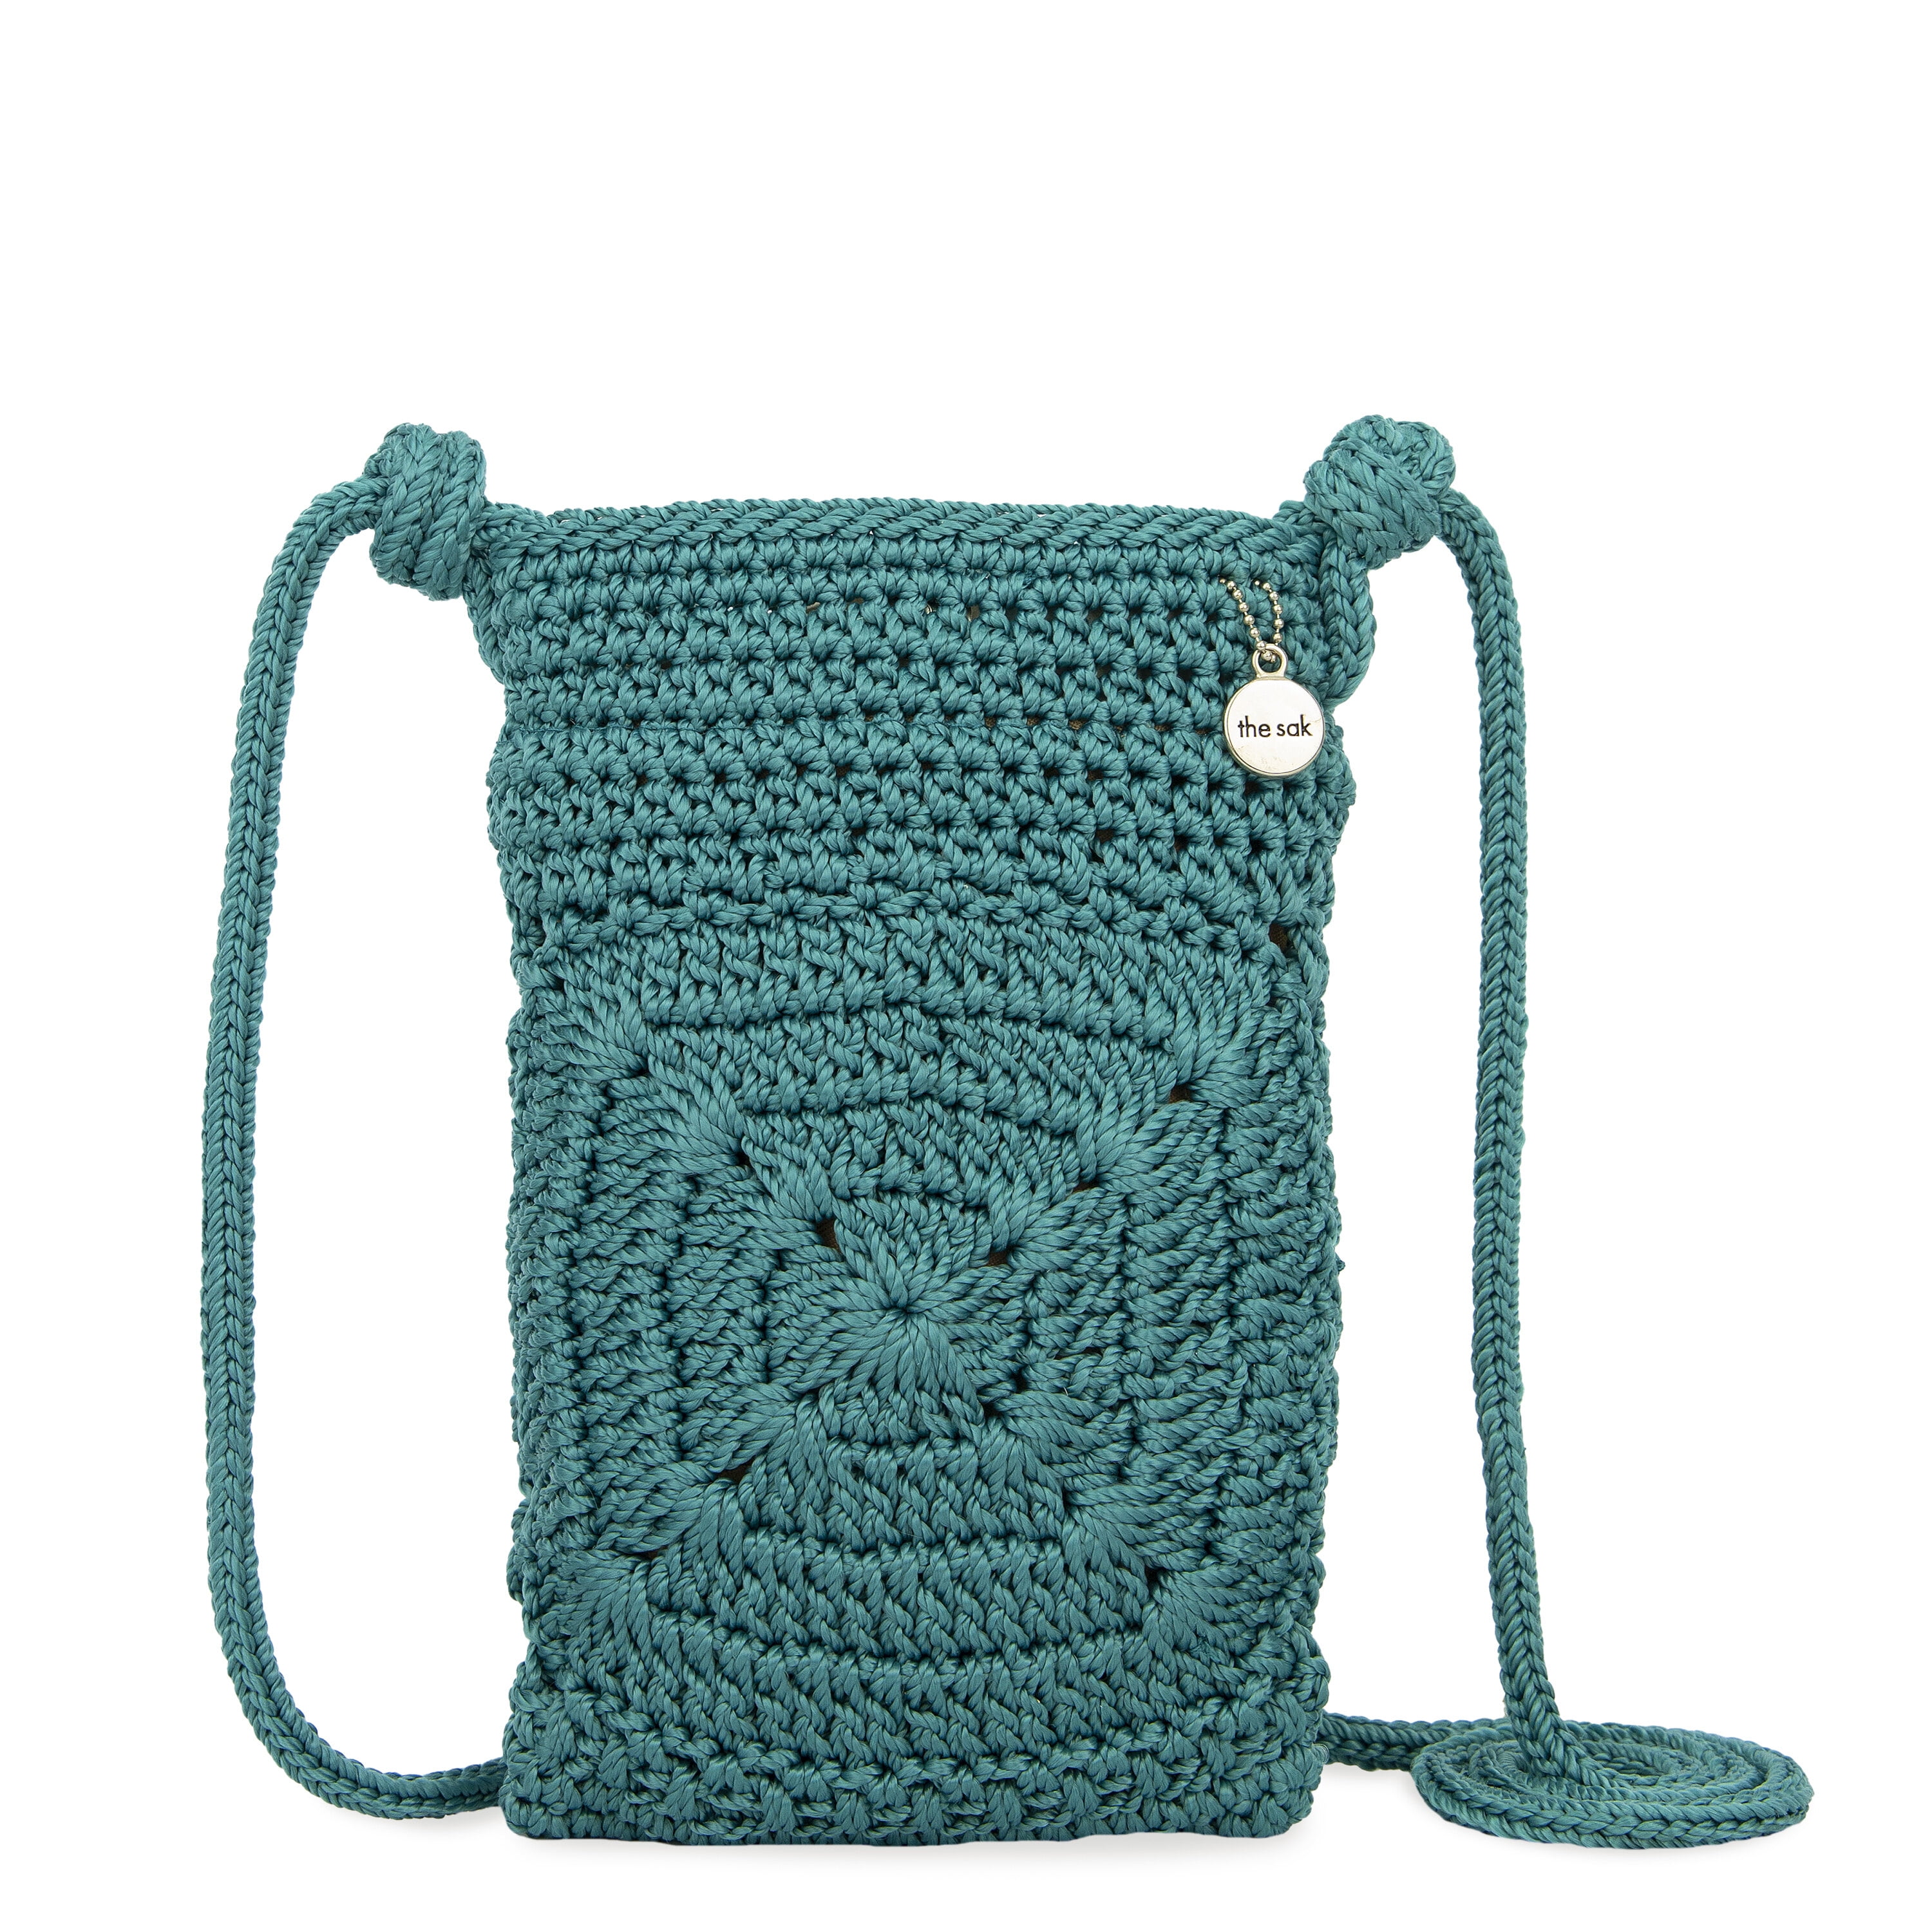 Buy Original the Sak Crochet Shoulder Bag Tan With Neutral Color Stripes  Inside Online in India - Etsy